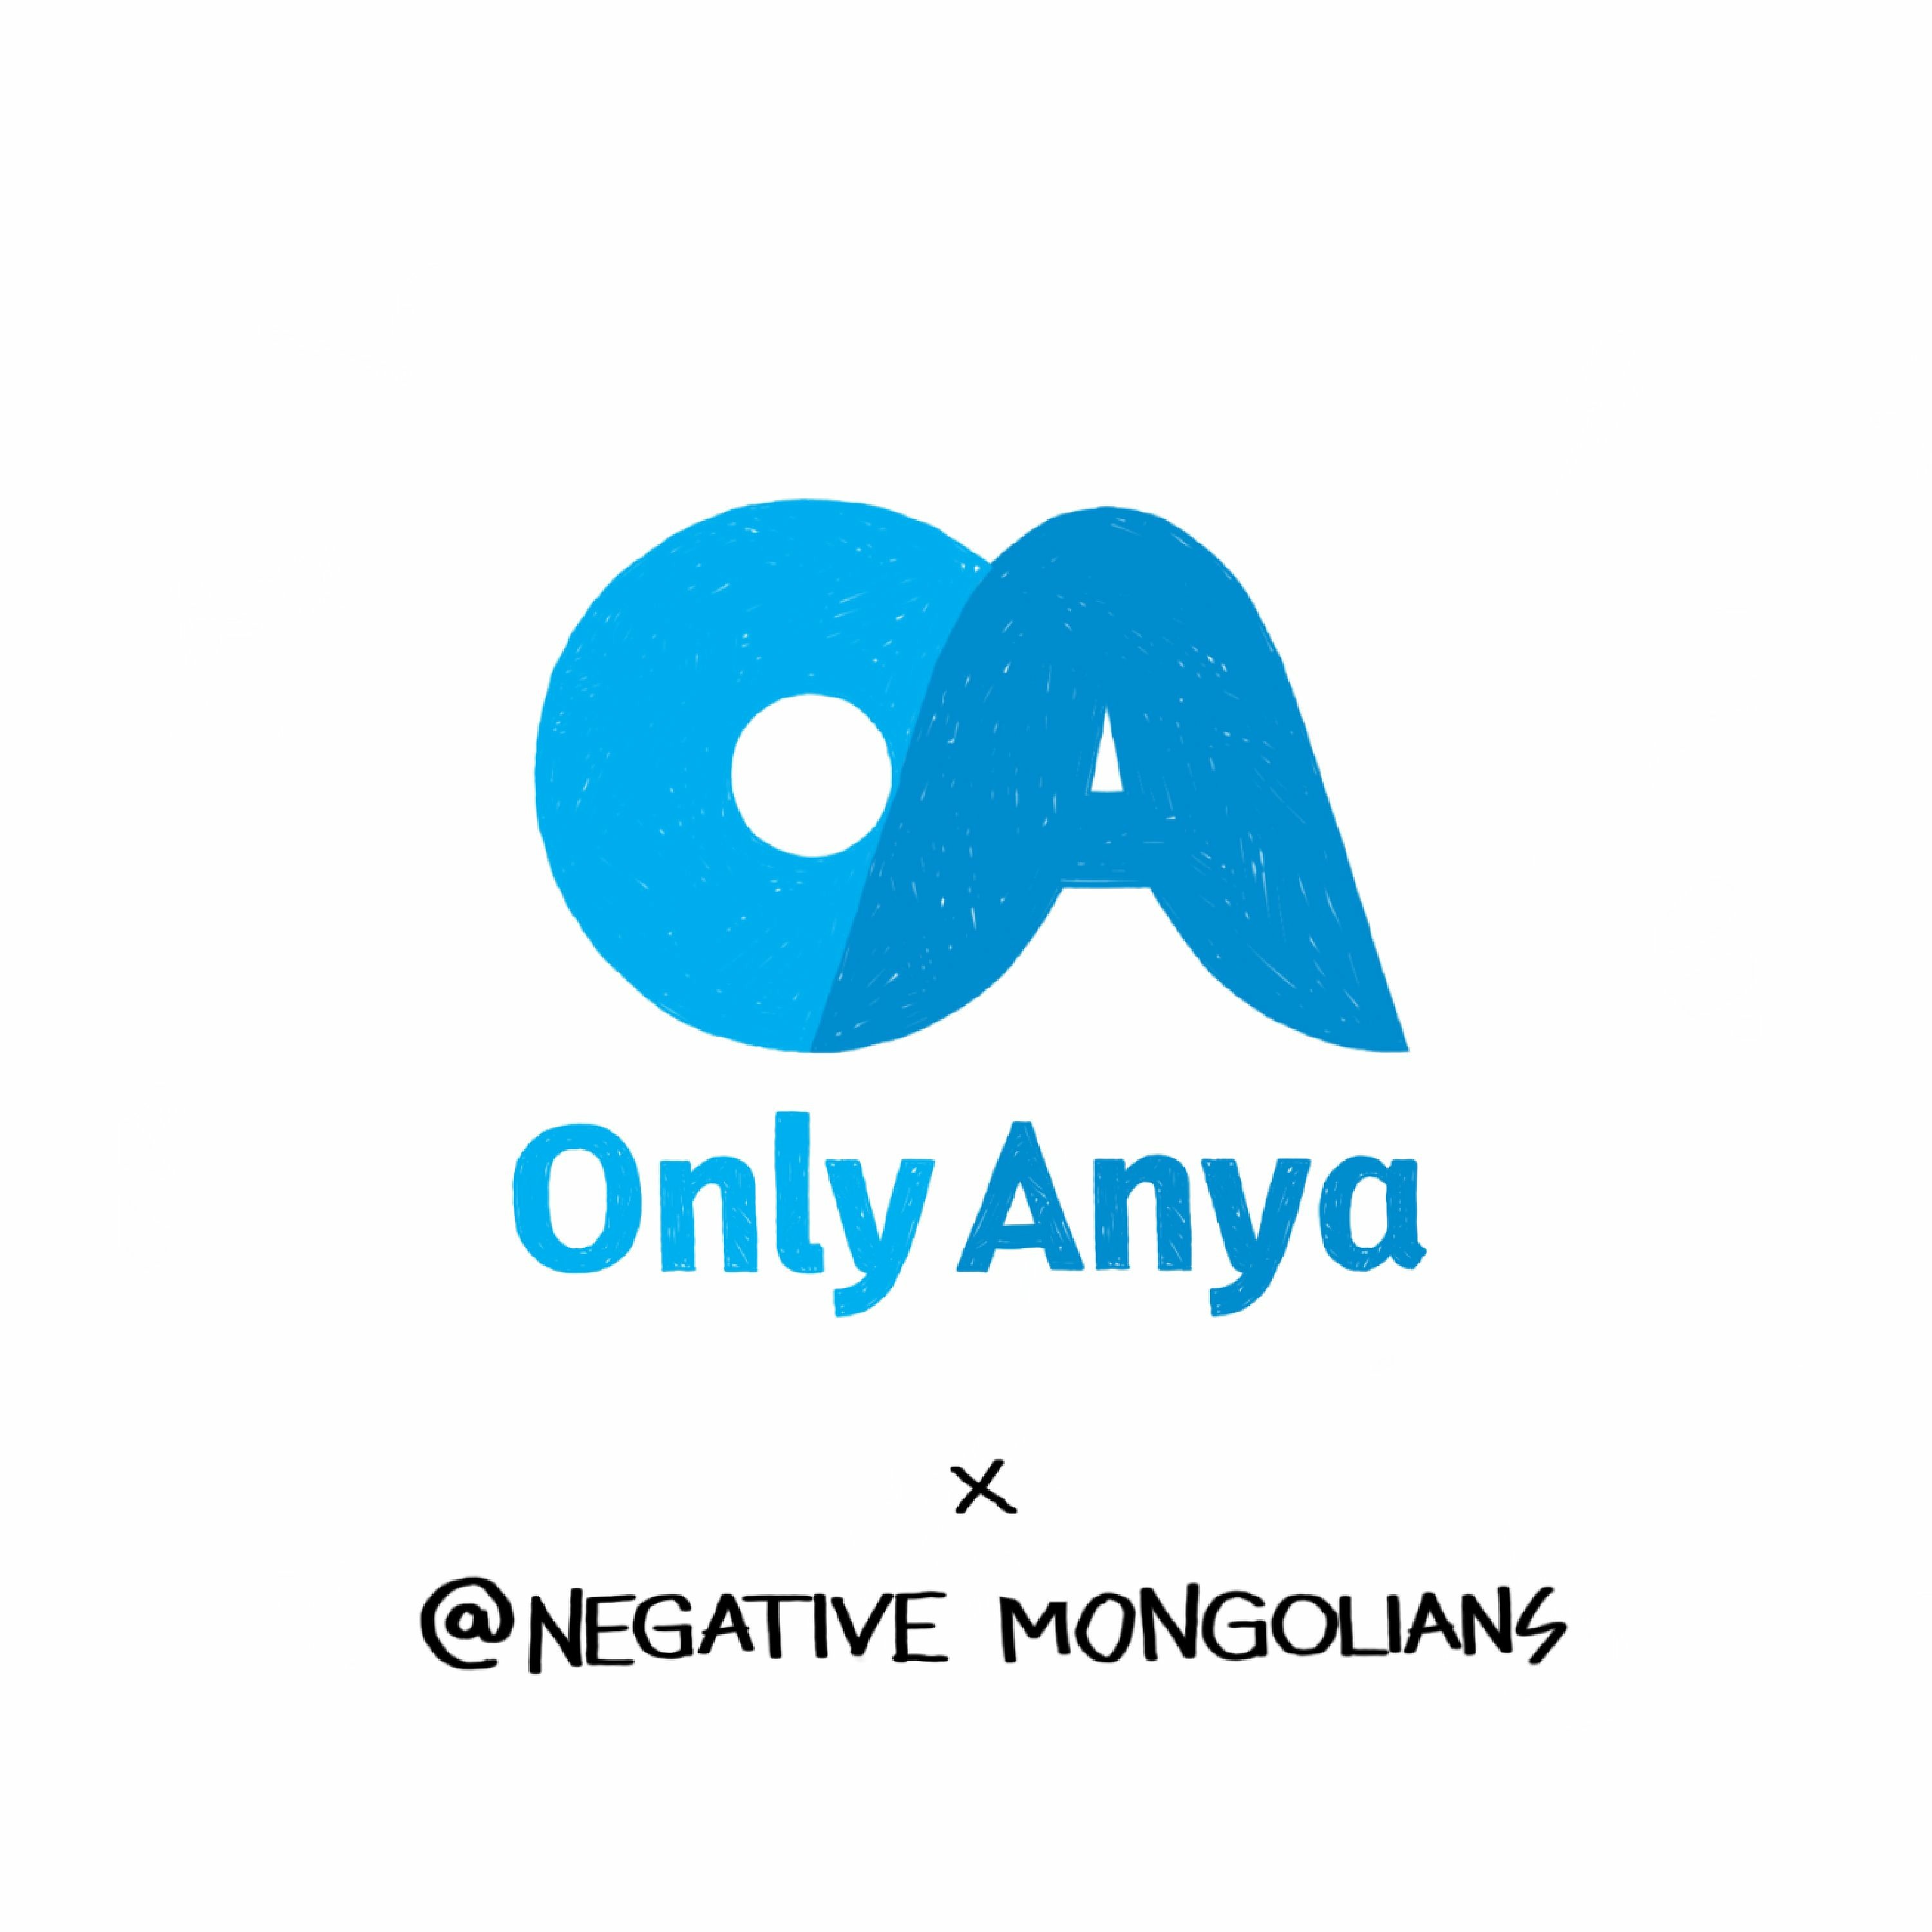 #57 OnlyAnya